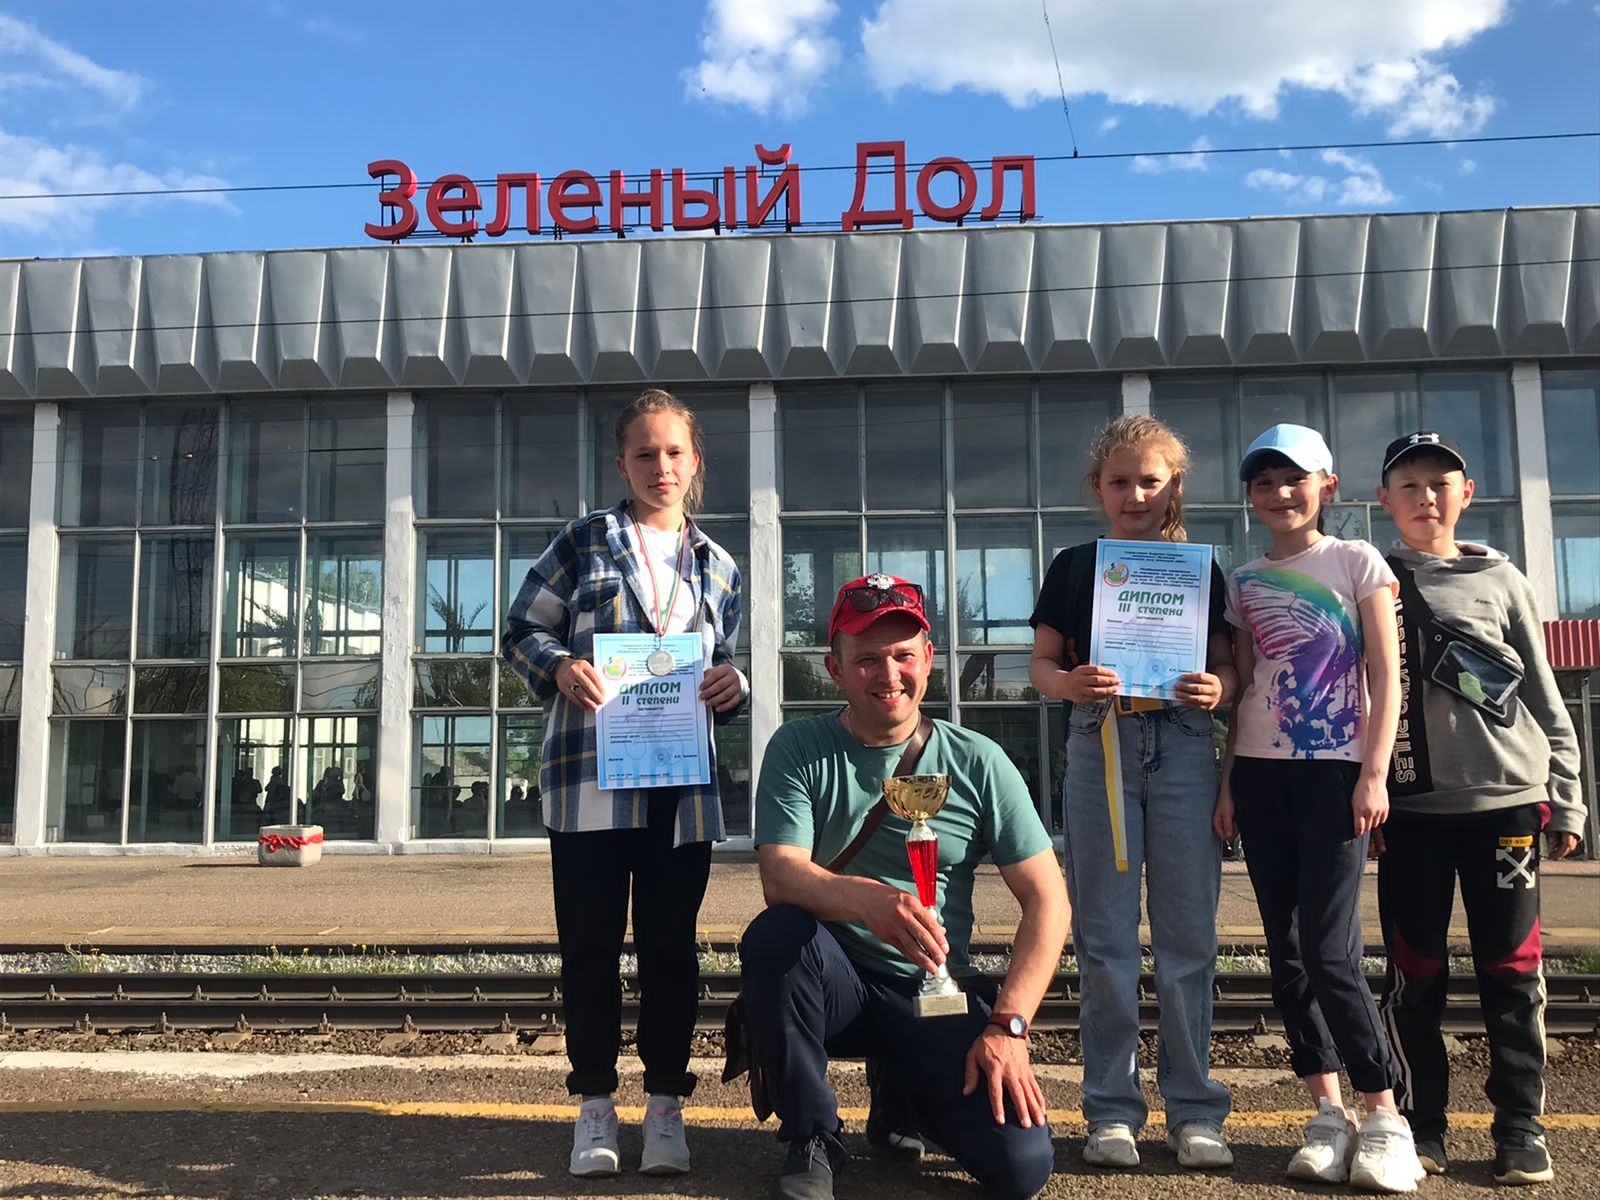 Команда ДДТ "Радуга талантов" заняла 3 место в соревнованиях по спортивному туризму